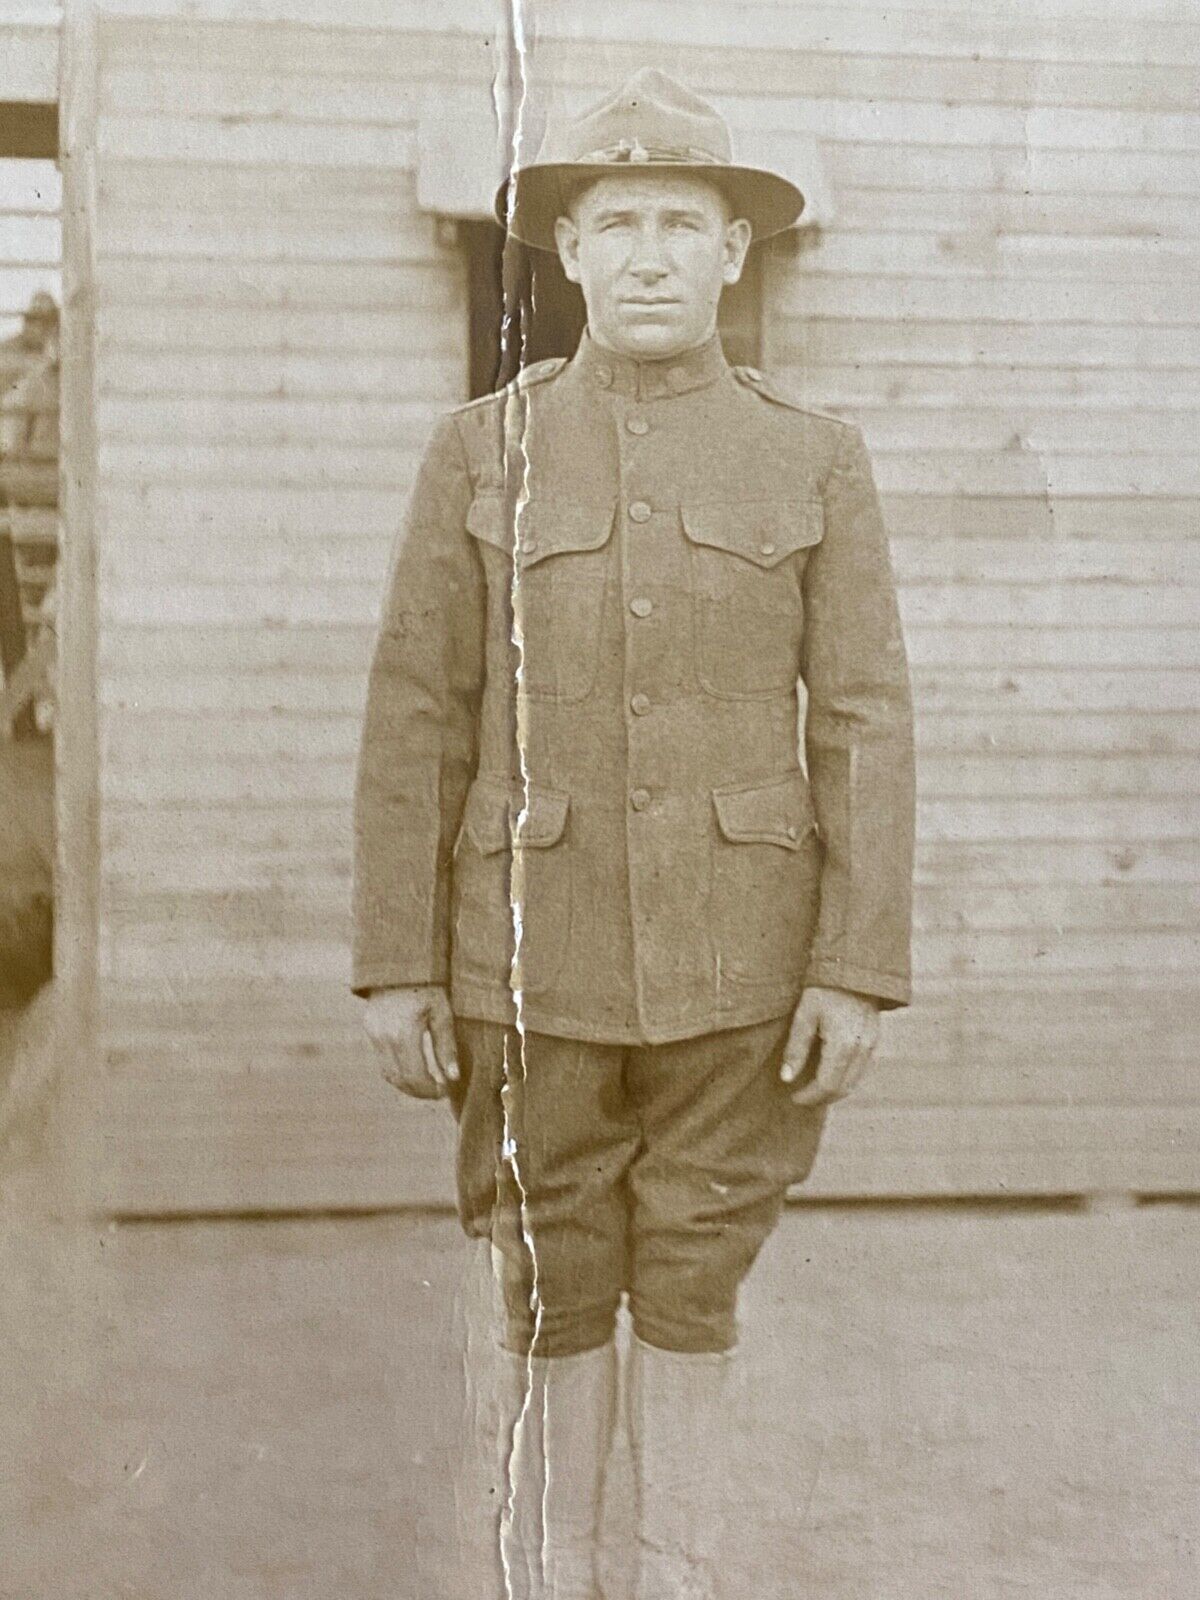 1918 RPPC: WWI ARMY PORTRAIT antique real photograph postcard SOLDIER, BARRACKS